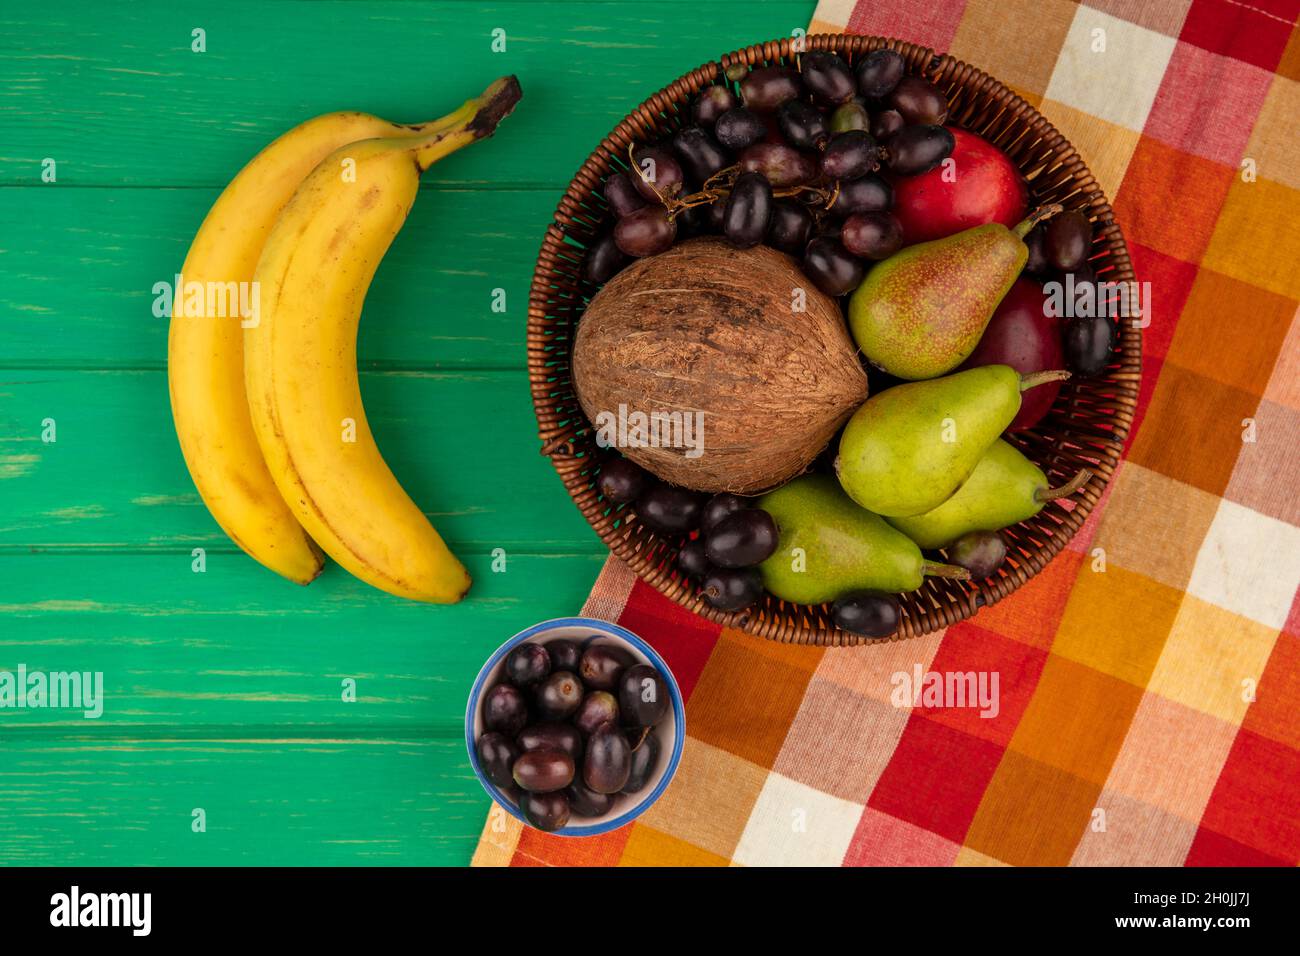 vista dall'alto di frutta come pera pesca uva cocco in cestino su tela di plaid e banane su sfondo verde Foto Stock